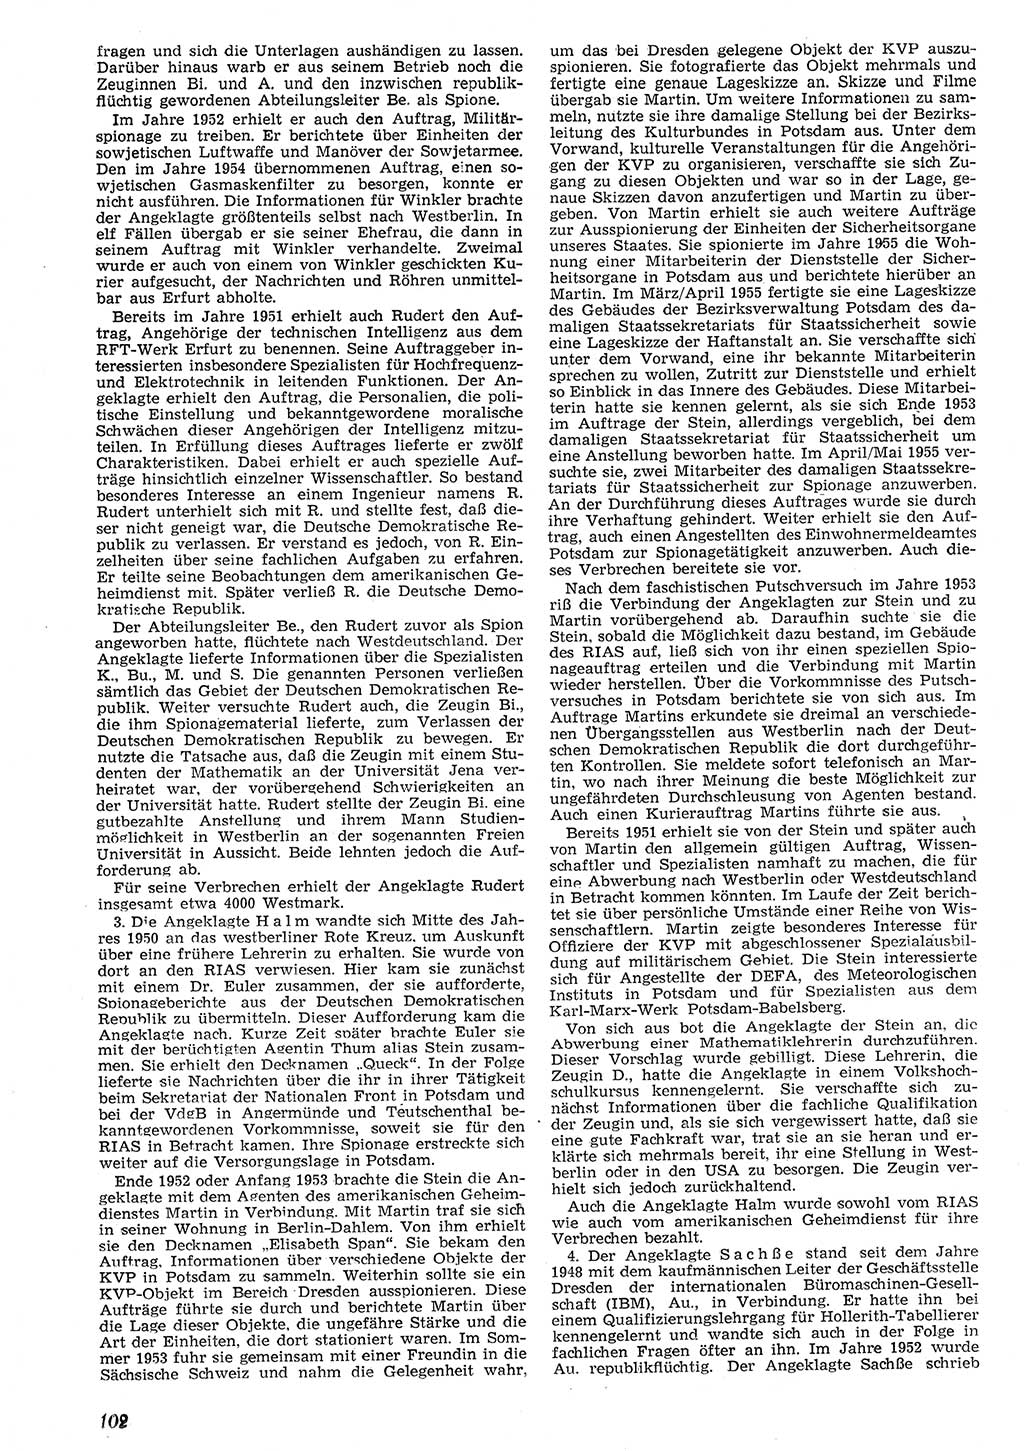 Neue Justiz (NJ), Zeitschrift für Recht und Rechtswissenschaft [Deutsche Demokratische Republik (DDR)], 10. Jahrgang 1956, Seite 102 (NJ DDR 1956, S. 102)